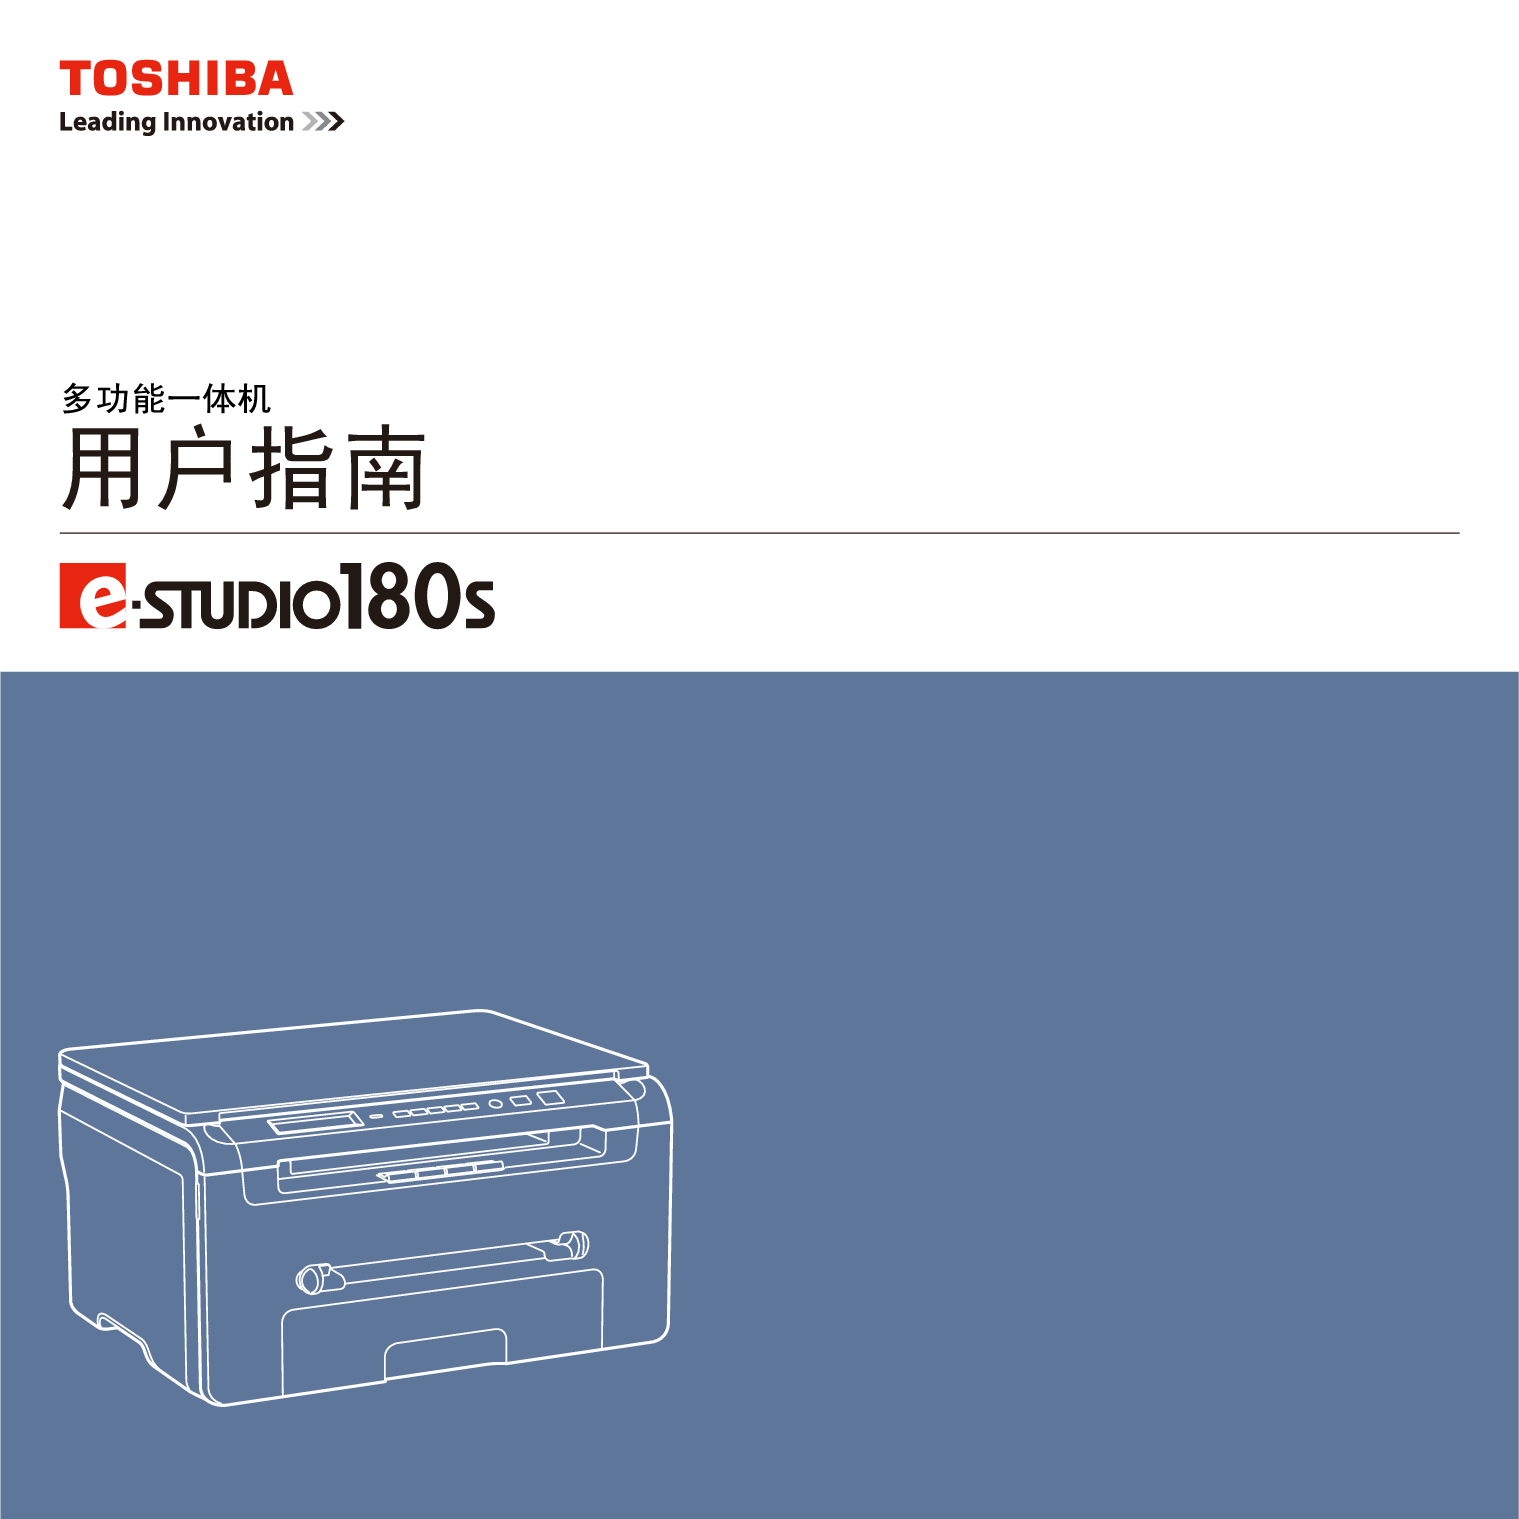 东芝 Toshiba e-STUDIO 180s 基础使用手册 封面